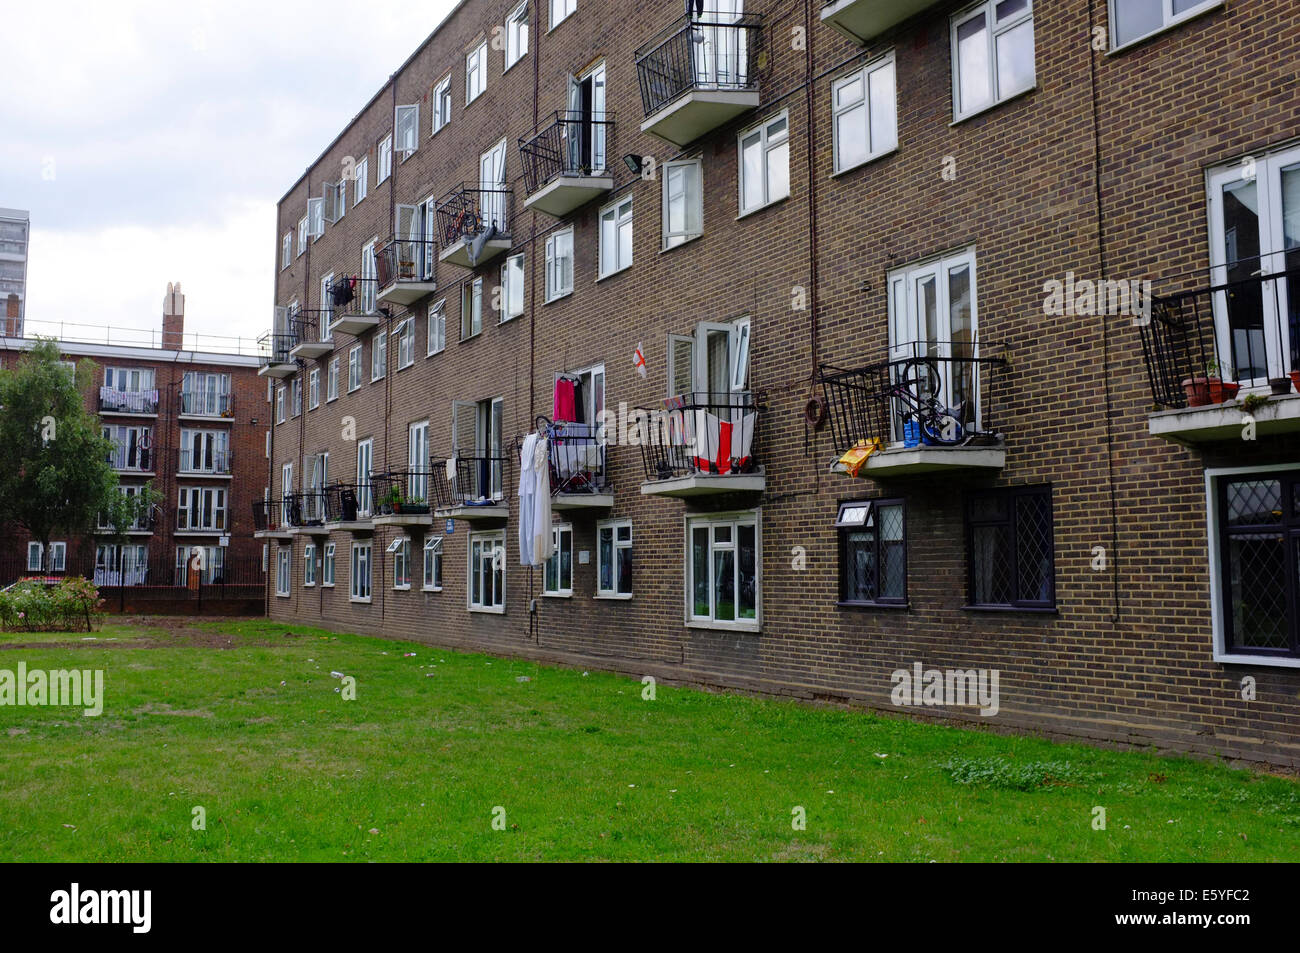 Housing Estate in Hackney Stock Photo